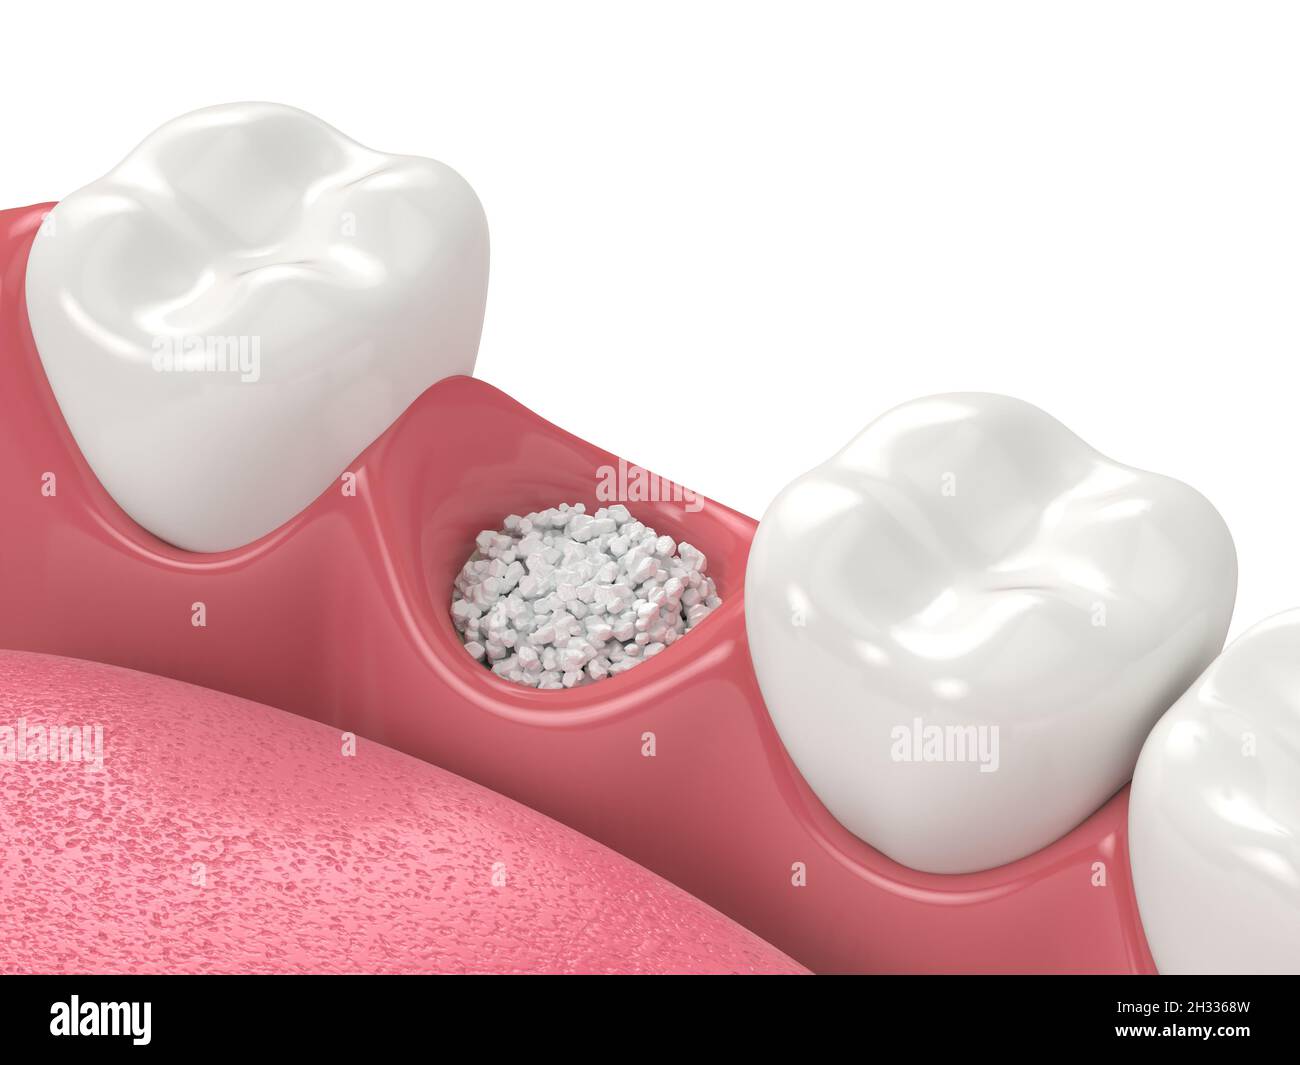 Rendu 3D de la greffe osseuse dentaire avec biomatériau osseux dentaire sur fond blanc.Concept de procédure d'augmentation osseuse de la mâchoire. Banque D'Images